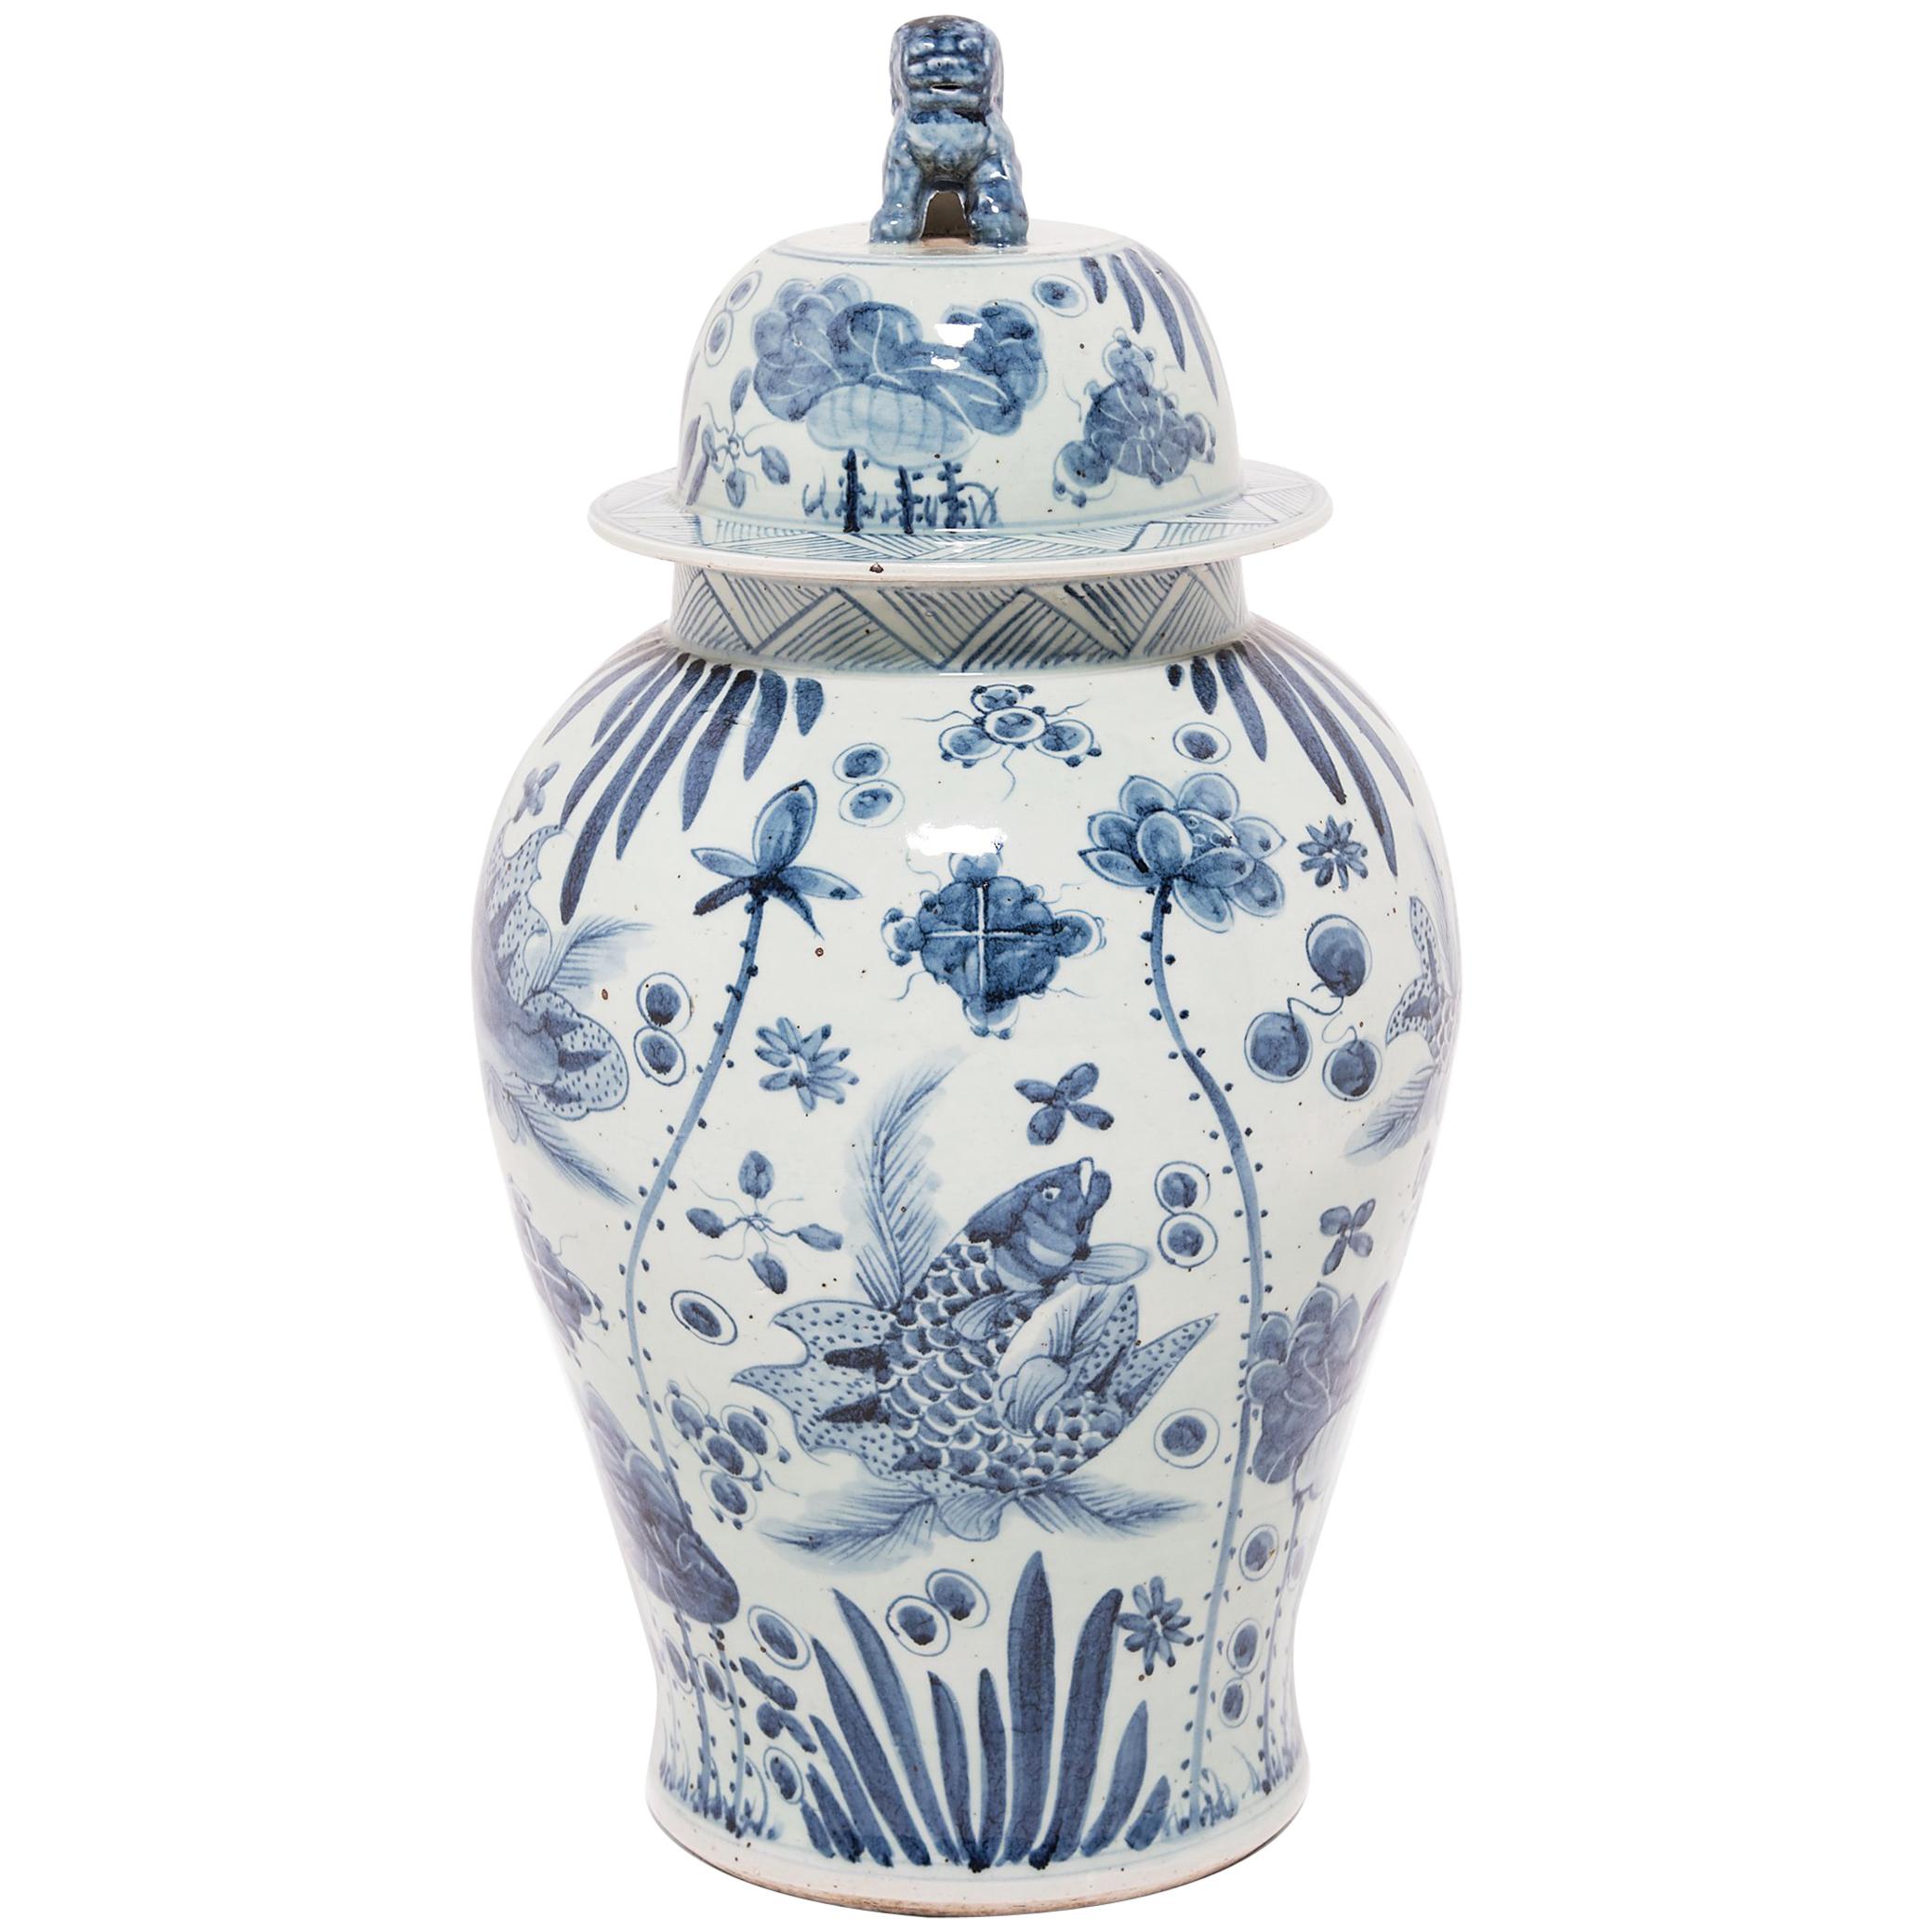 Pot balustre chinois bleu et blanc avec poissons et fleurs 